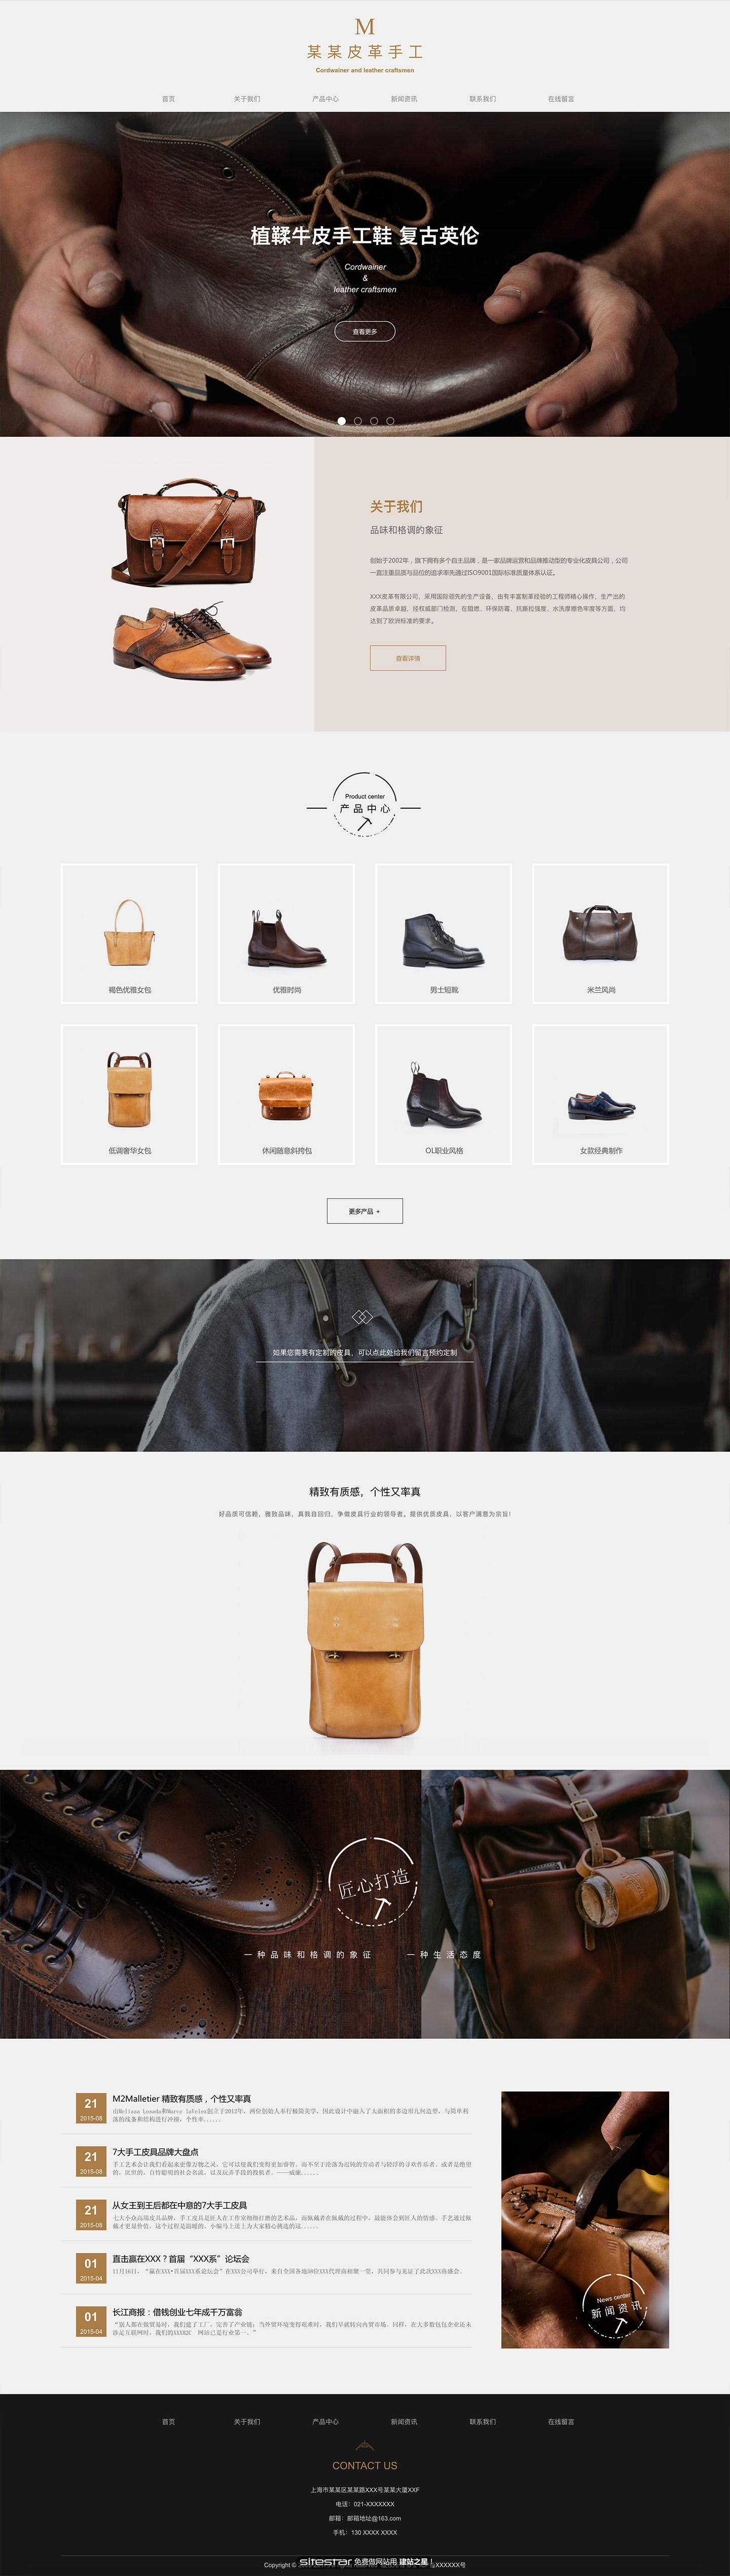 企业网站精美模板-leather-1067977